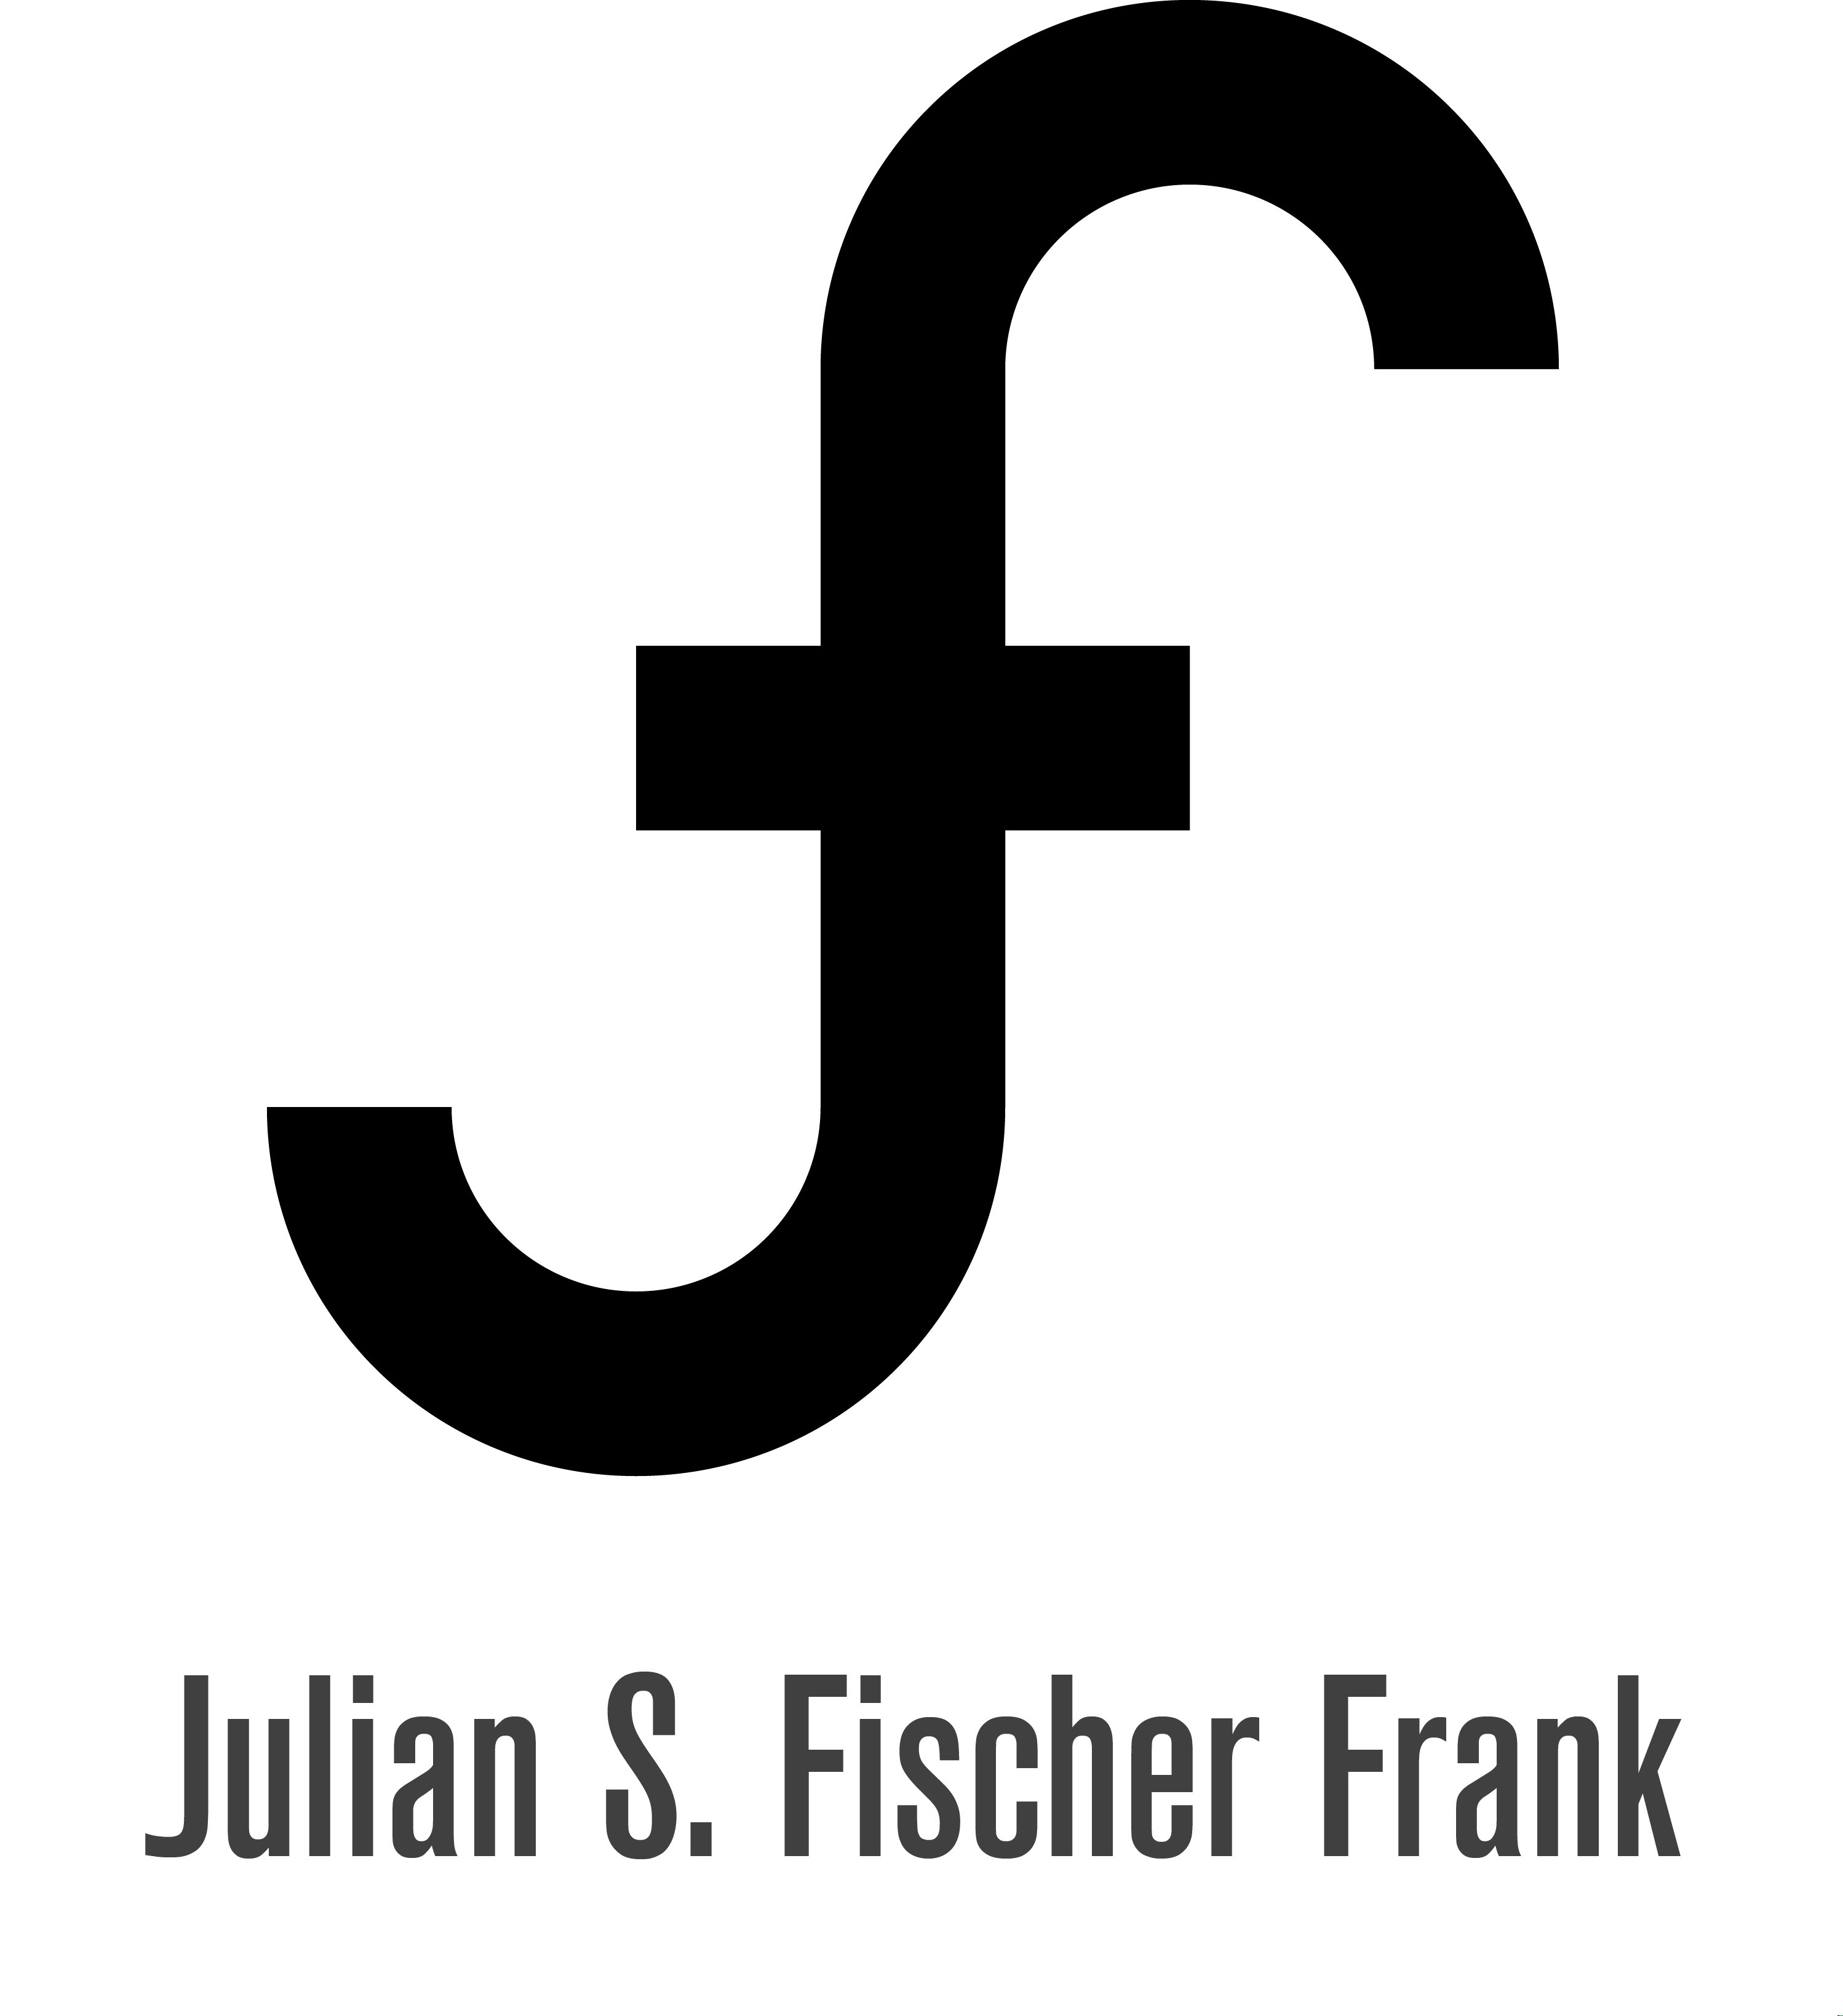 Julian Fischer Frank